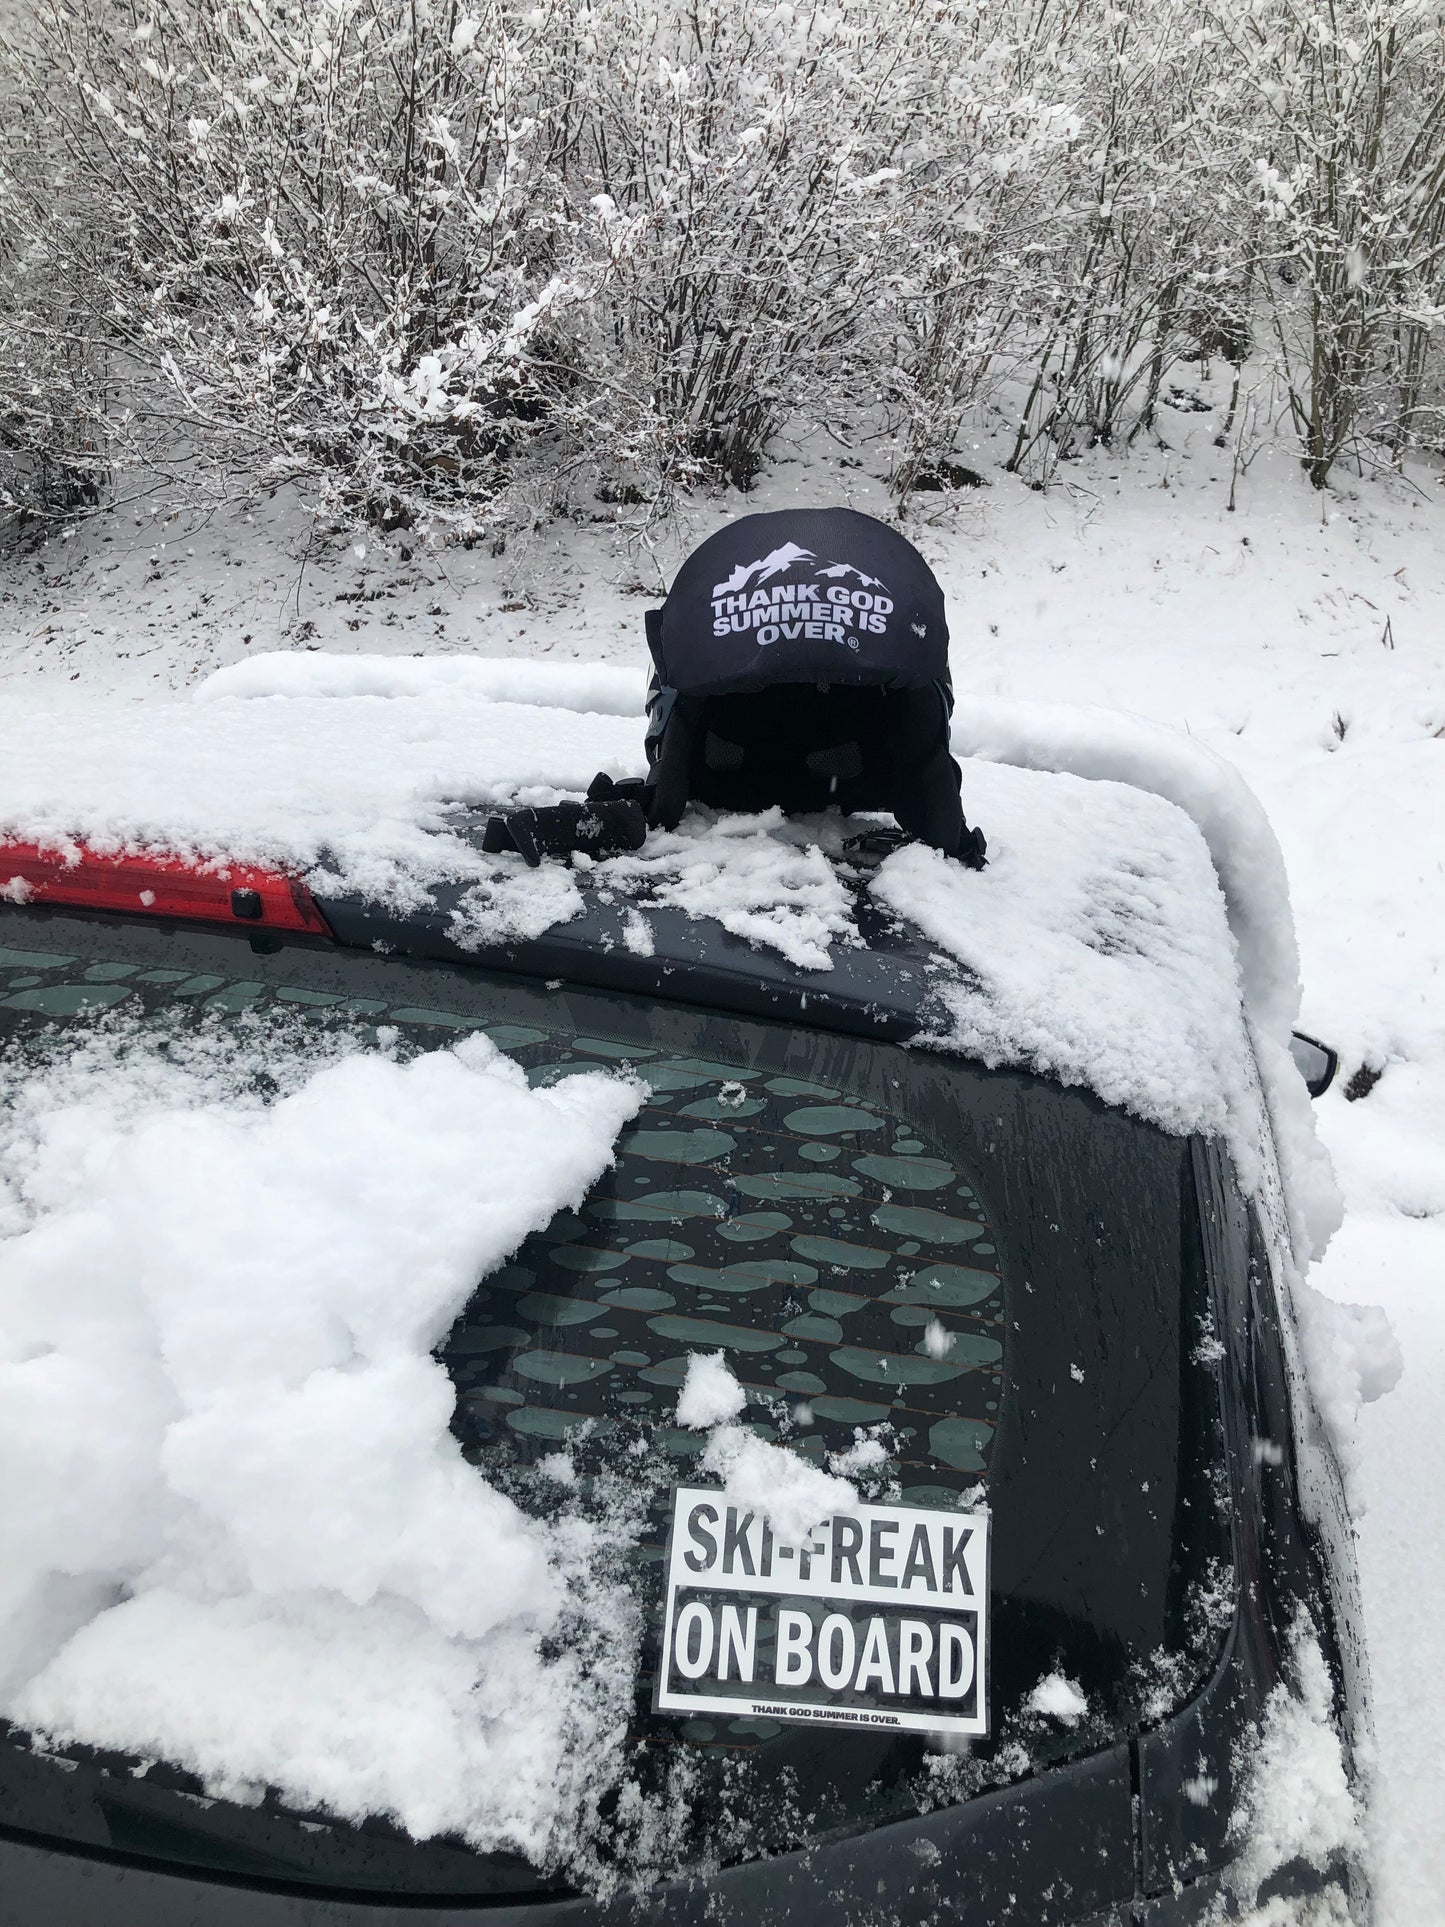 "SKI-FREAK ON BOARD" Sticker